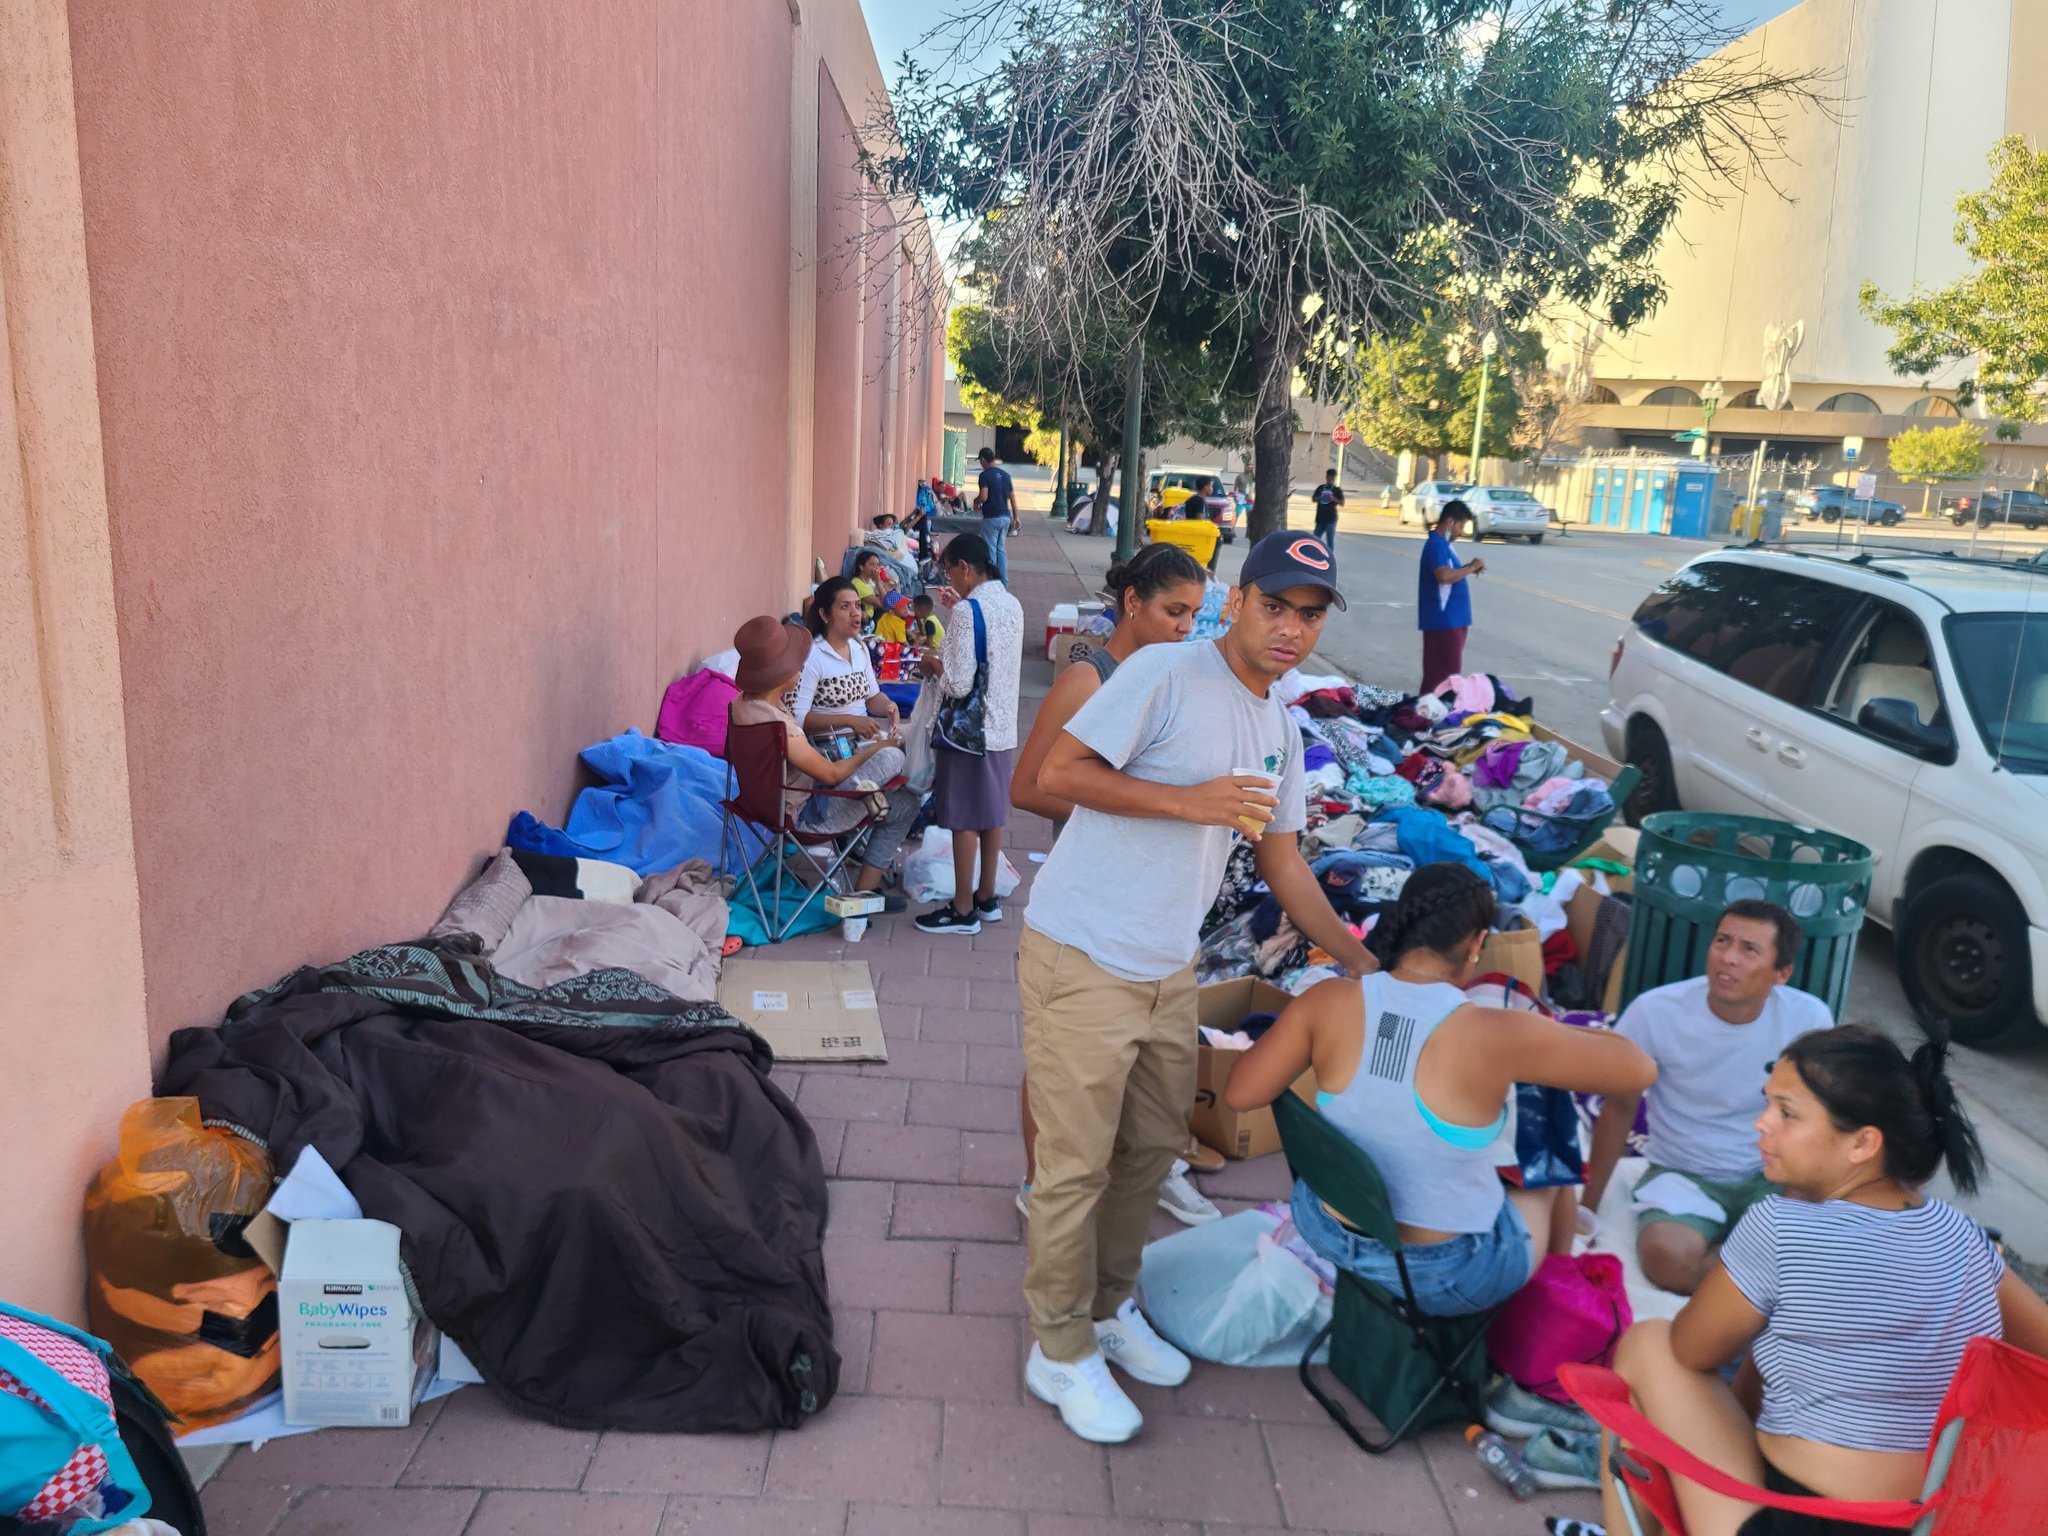 Venezolanos llevan cuatro días en las calles de El Paso, a la espera de autobuses a Nueva York (Videos)